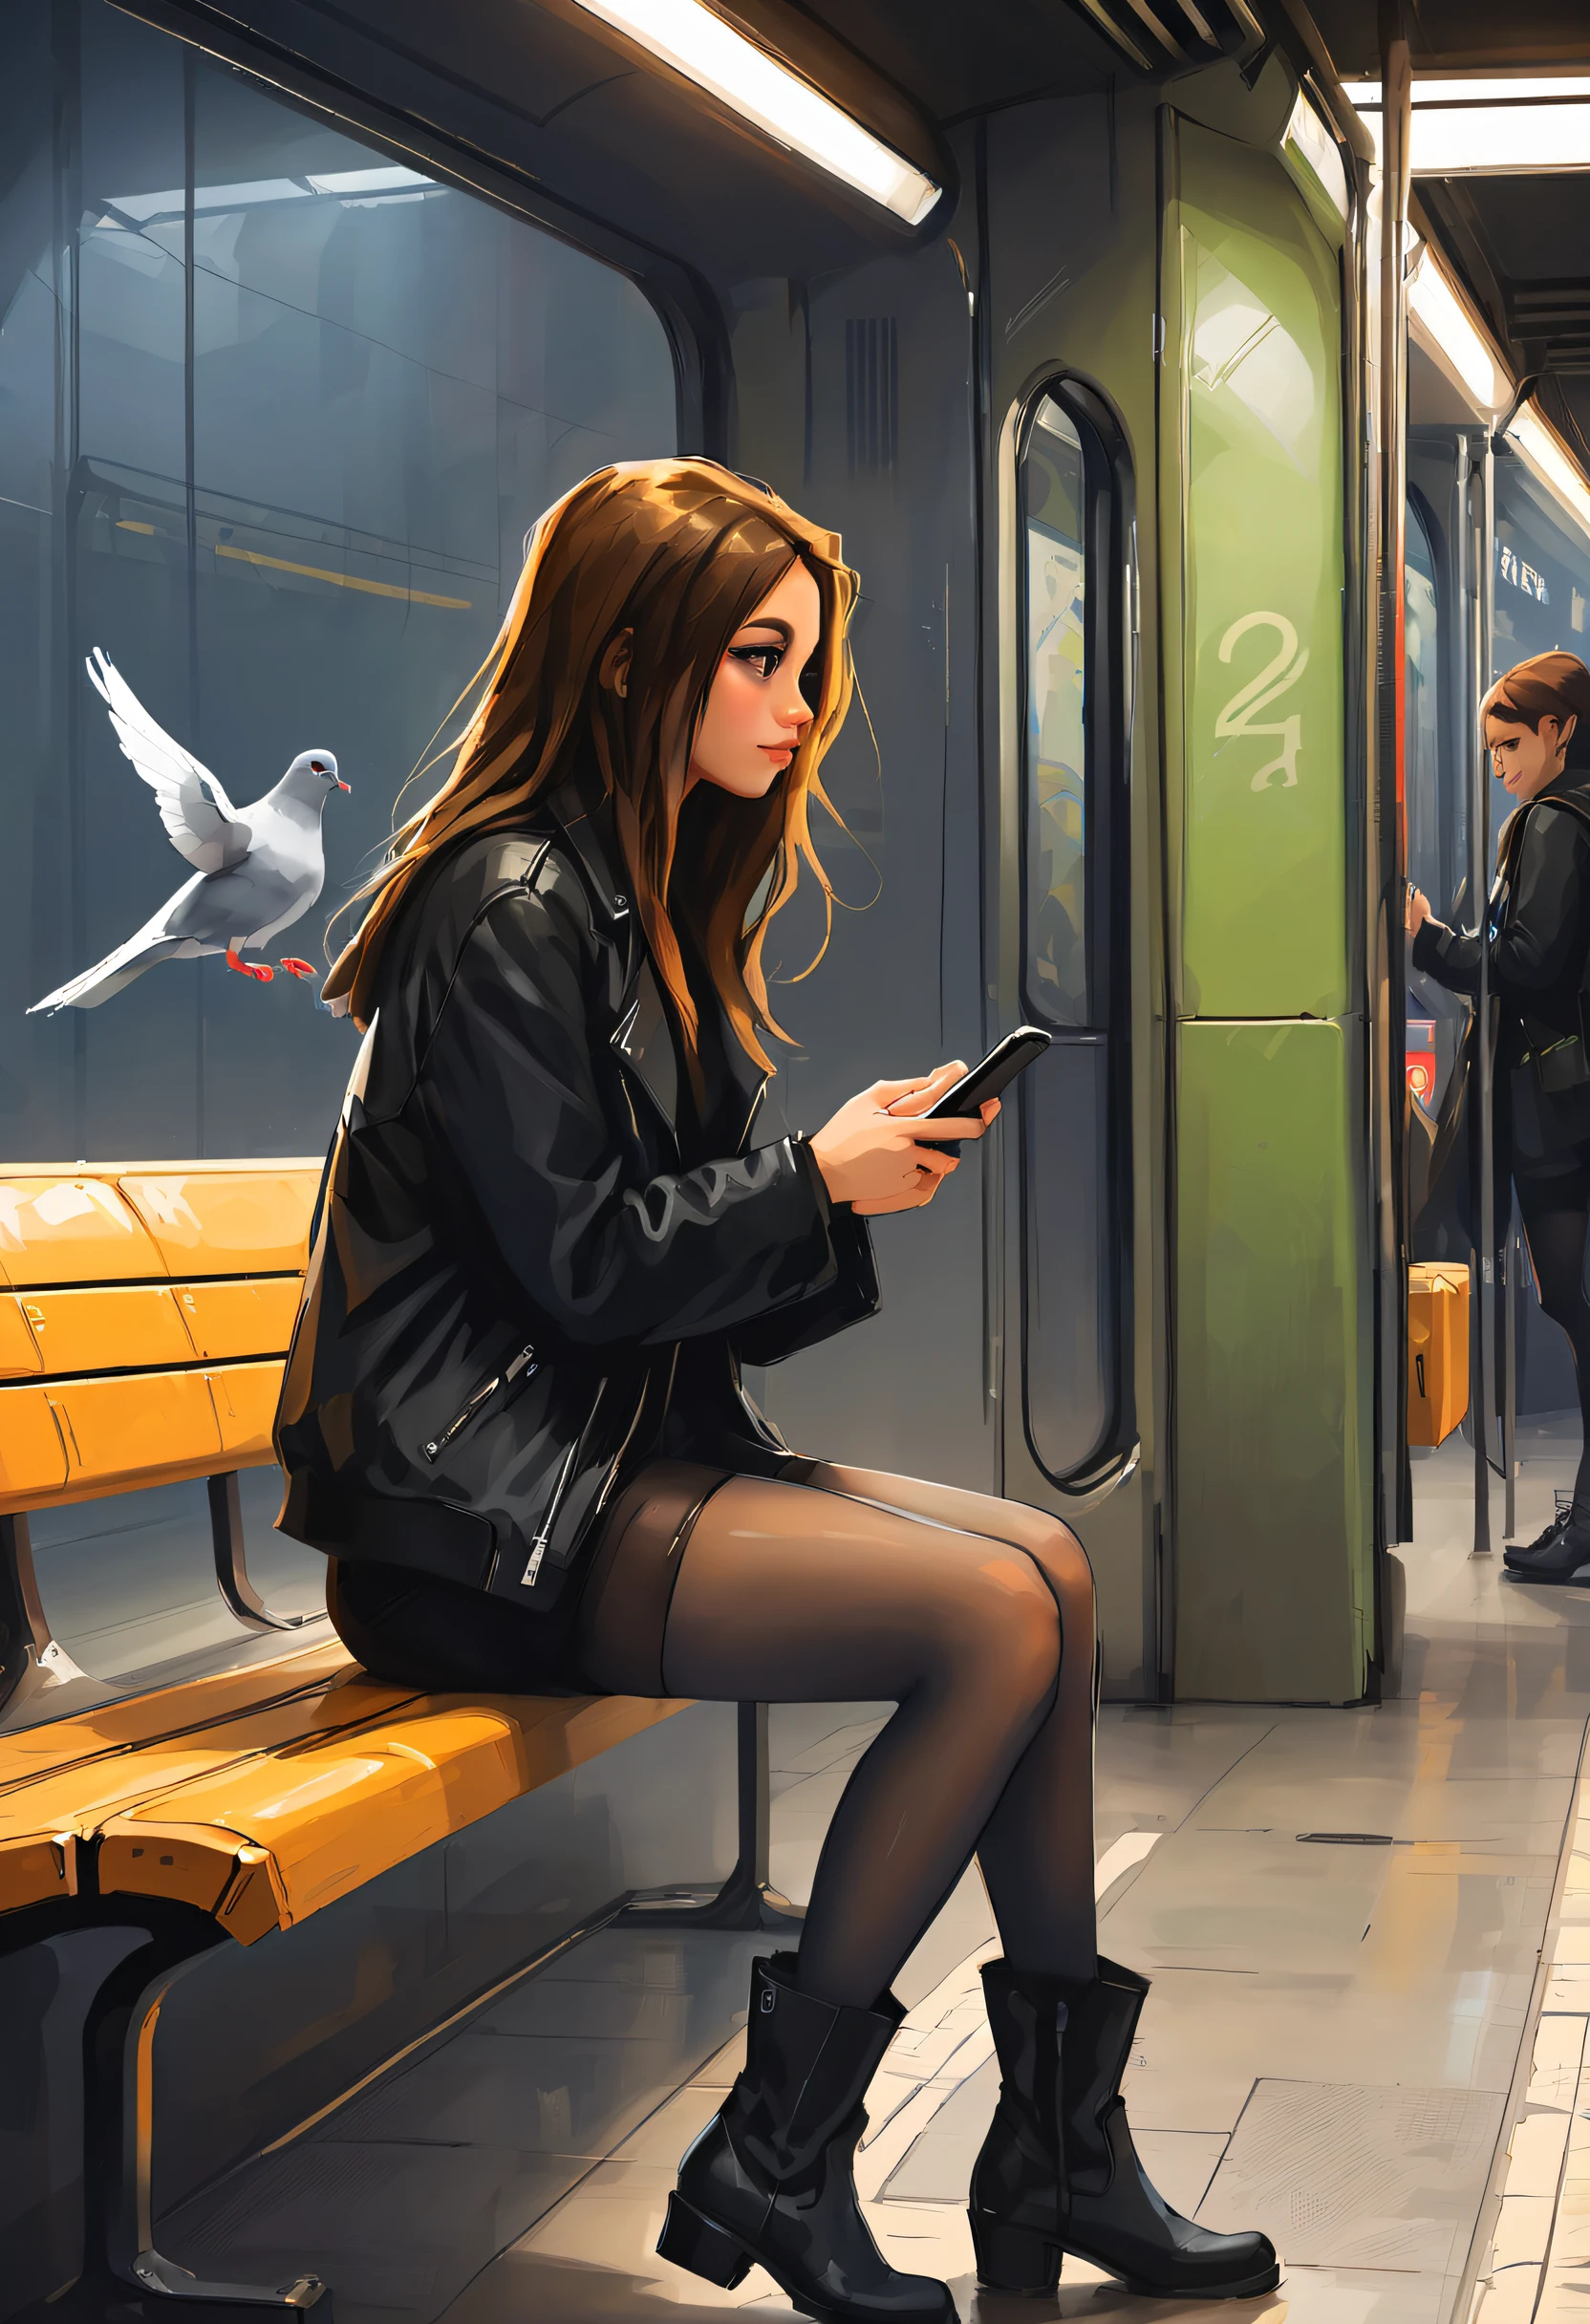 검은 재킷을 입은 아름다운 소녀, 그녀의 전화 확인, 팬티스타킹, 높은 부츠, 반바지, 지하철역 벤치에 앉아, 인공 조명, 비둘기와 함께, 관점, 왼쪽부터, 프로필, 걸작, 최고의 품질, 스타일로는 (삼도사츠:1.2)